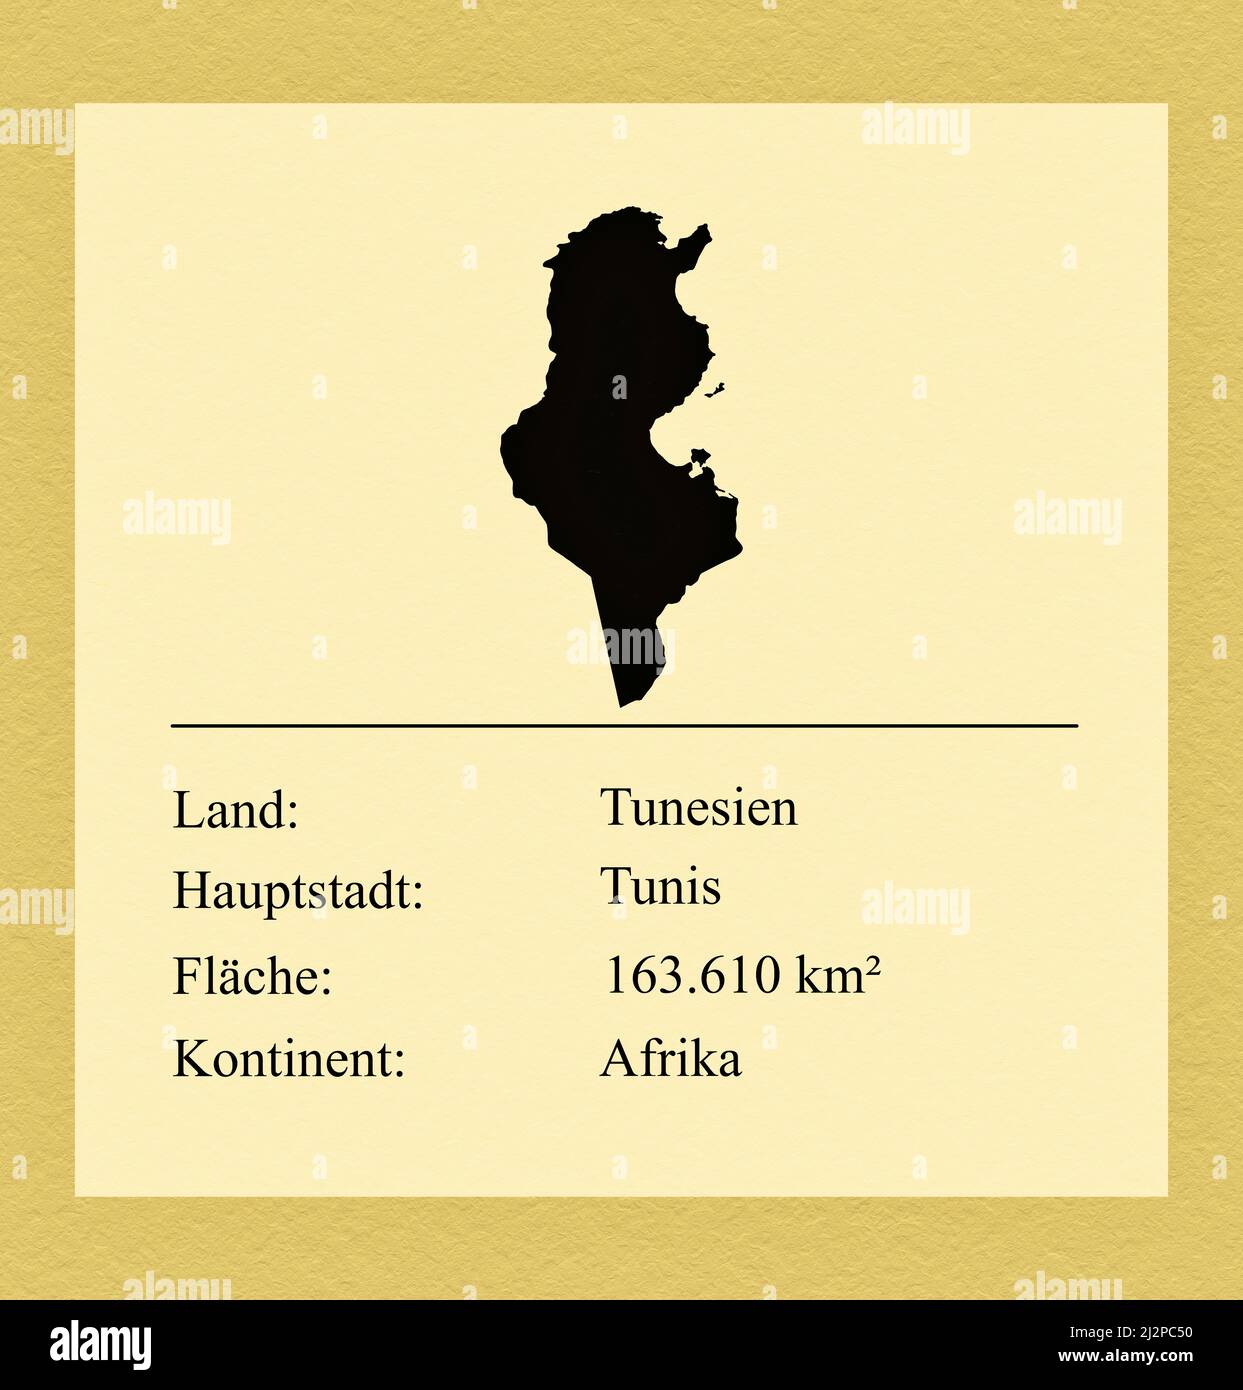 Umrisse des Landes Tunesien, darunter ein kleiner Steckbrief mit Ländernamen, Hauptstadt, Fläche und Kontinent Foto de stock